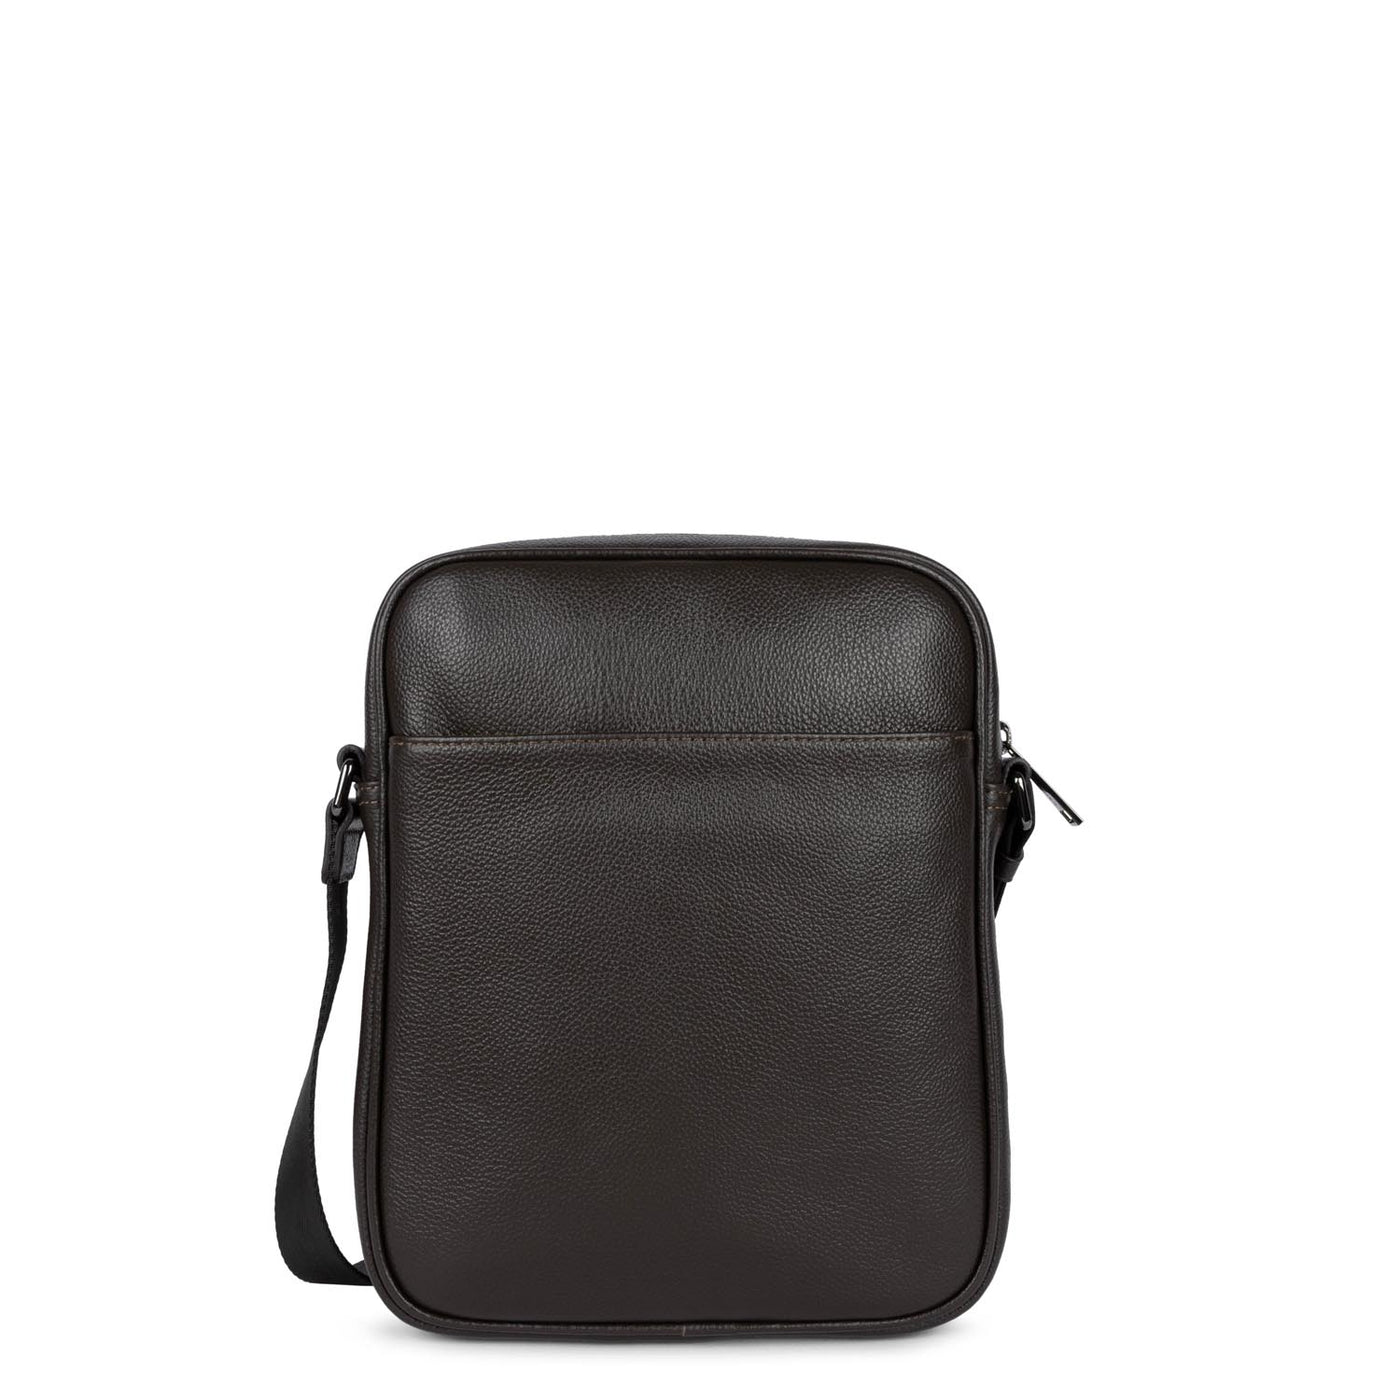 crossbody bag - milano gentlemen #couleur_marron